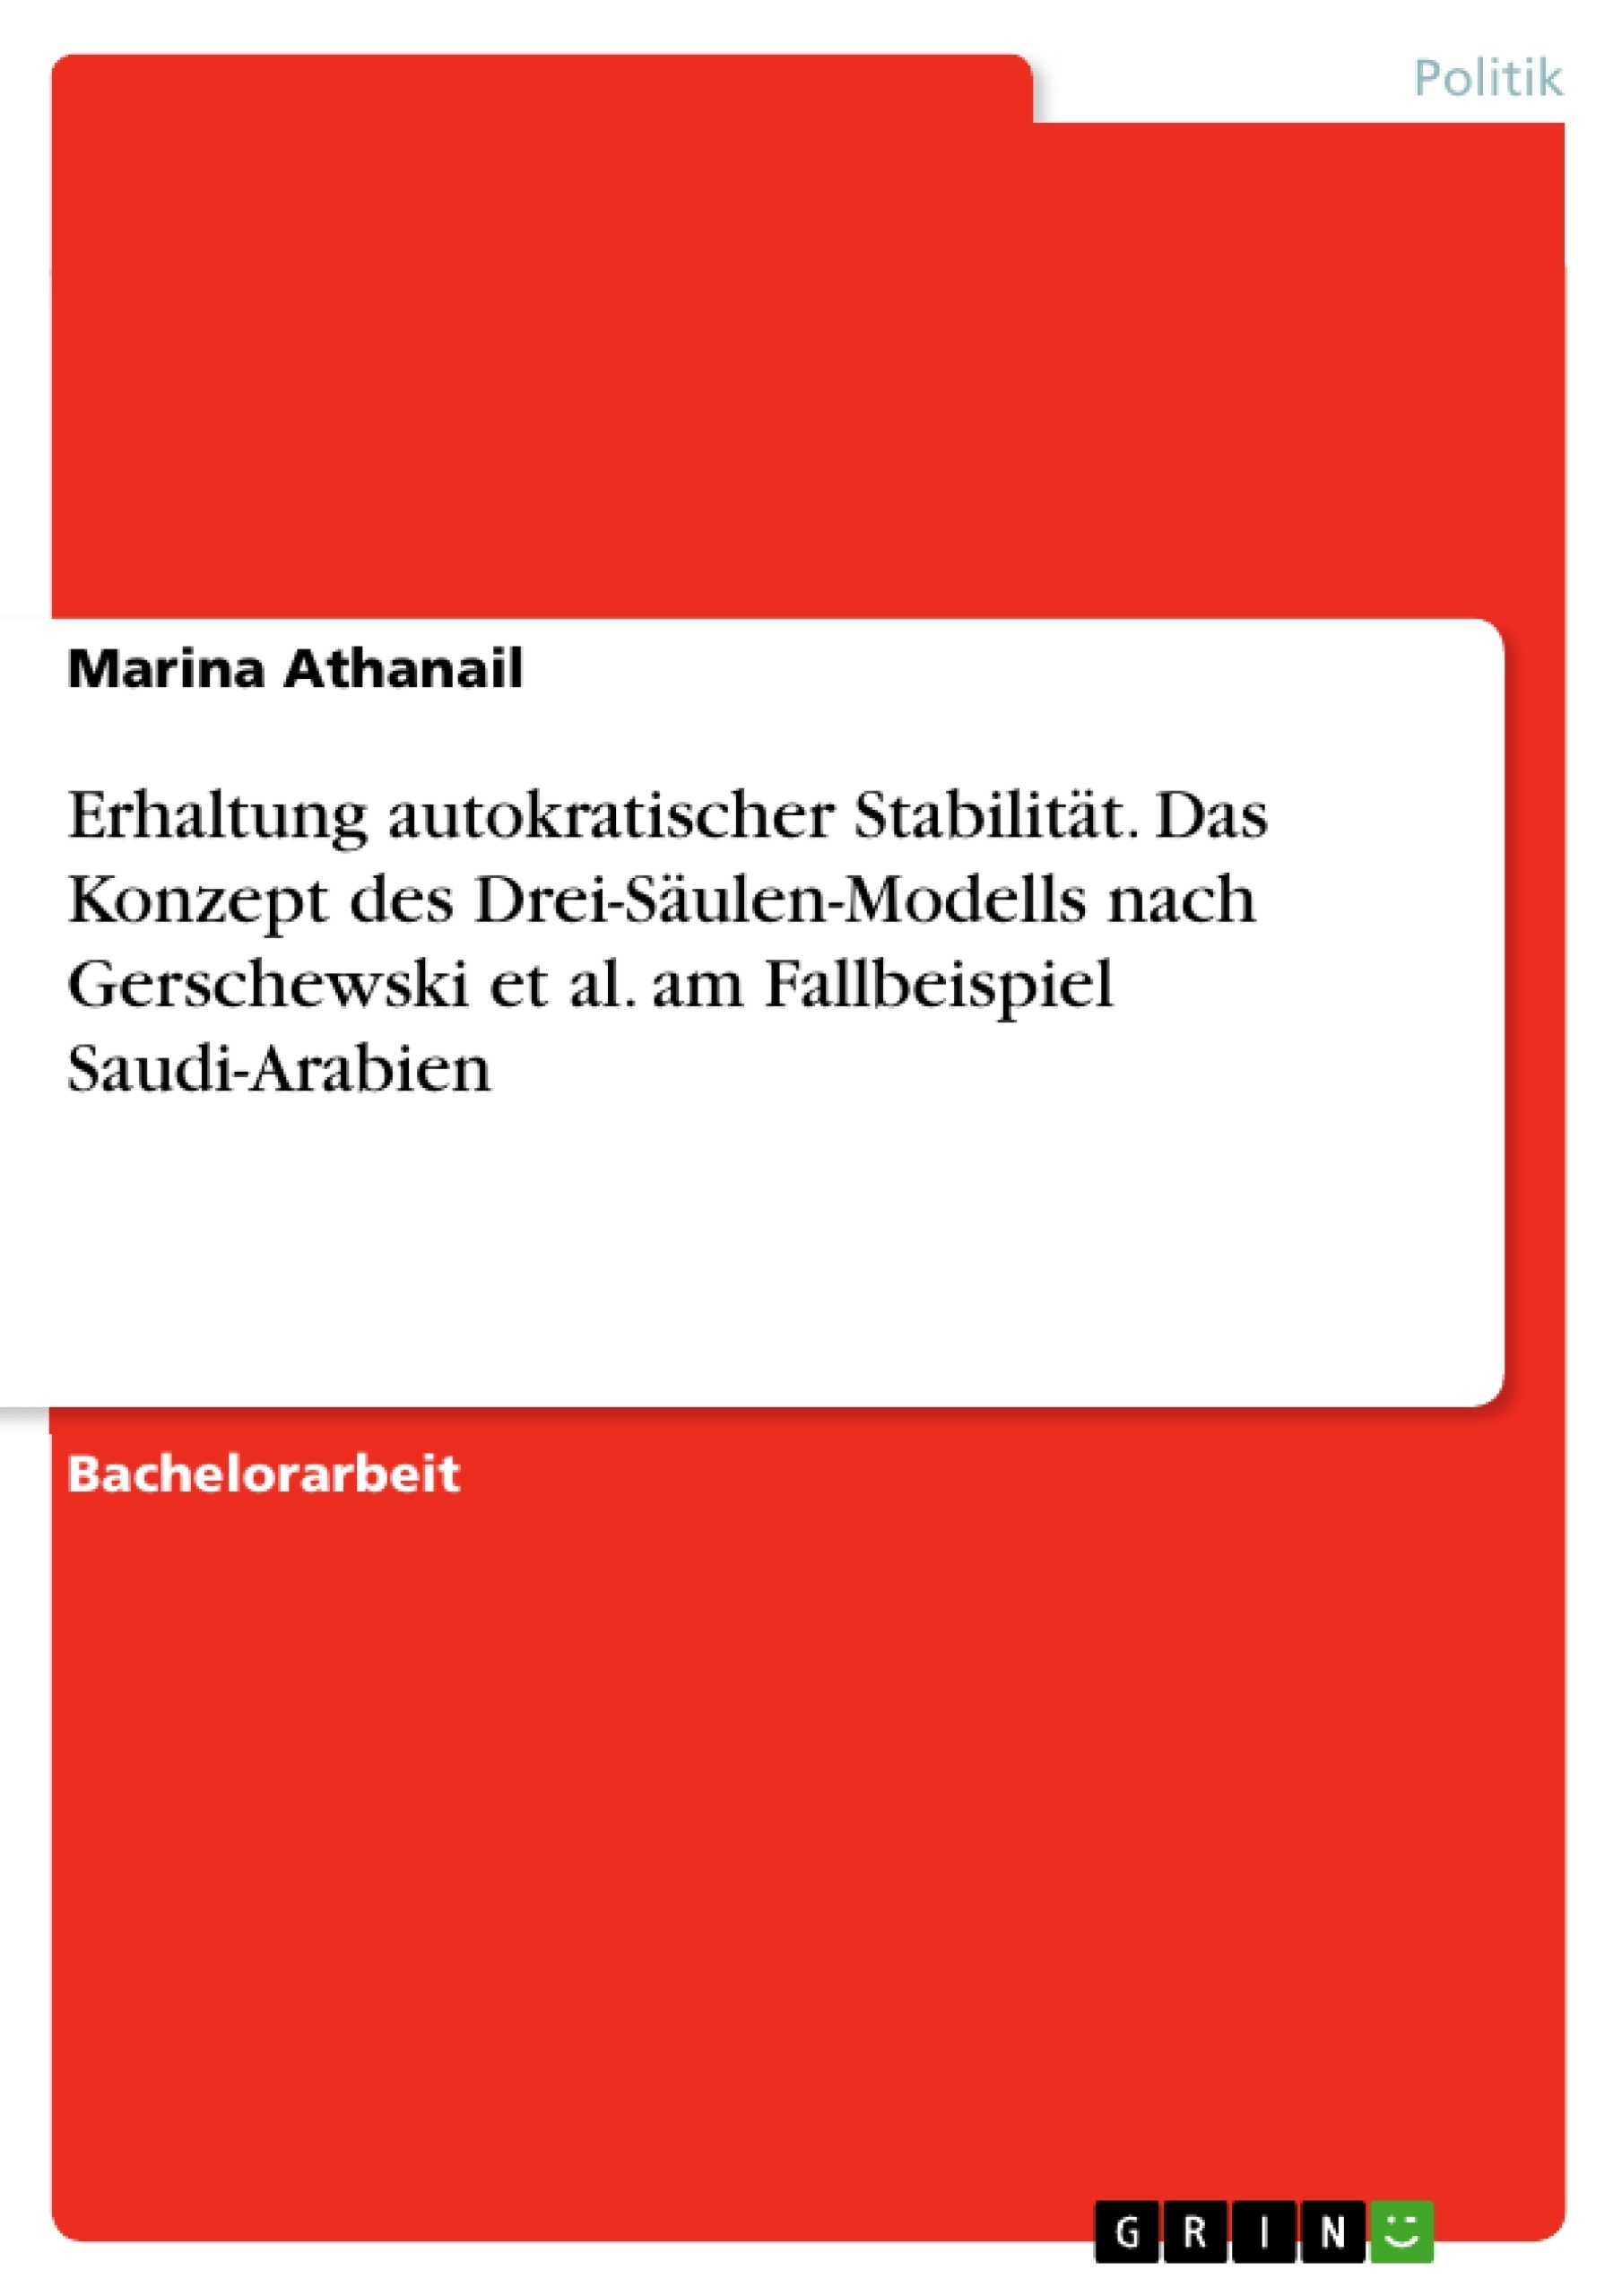 Título: Erhaltung autokratischer Stabilität. Das Konzept des Drei-Säulen-Modells nach Gerschewski et al. am Fallbeispiel Saudi-Arabien